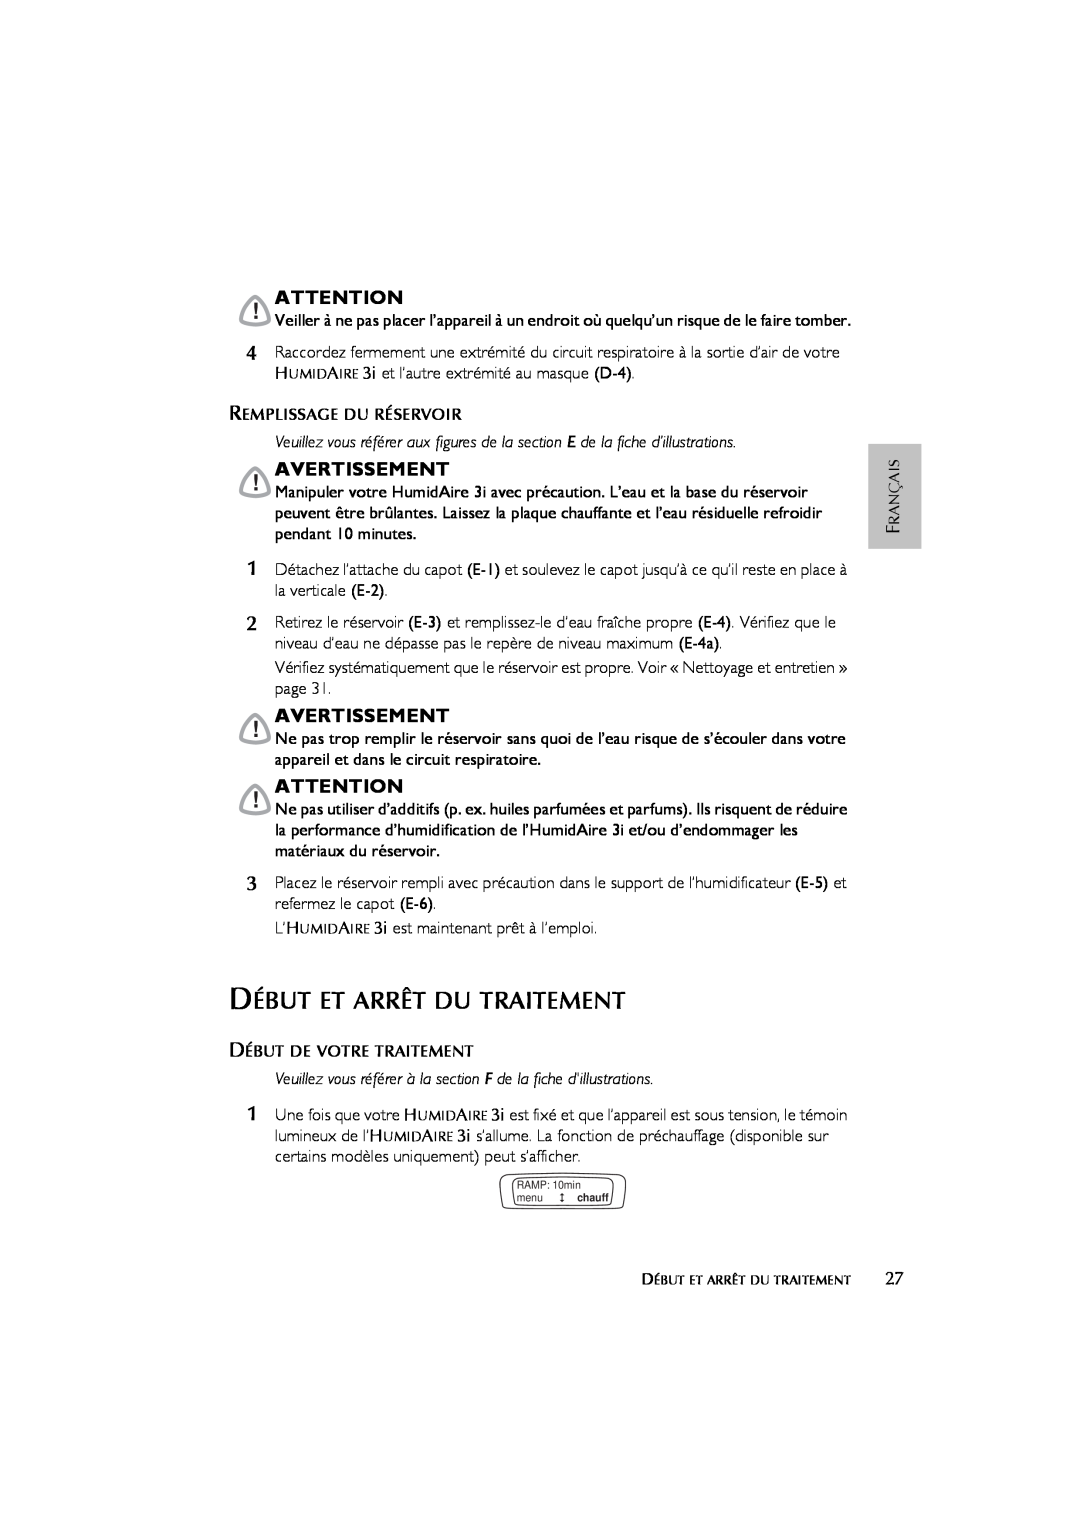 ResMed 3I user manual Début Et Arrêt Du Traitement, Avertissement 